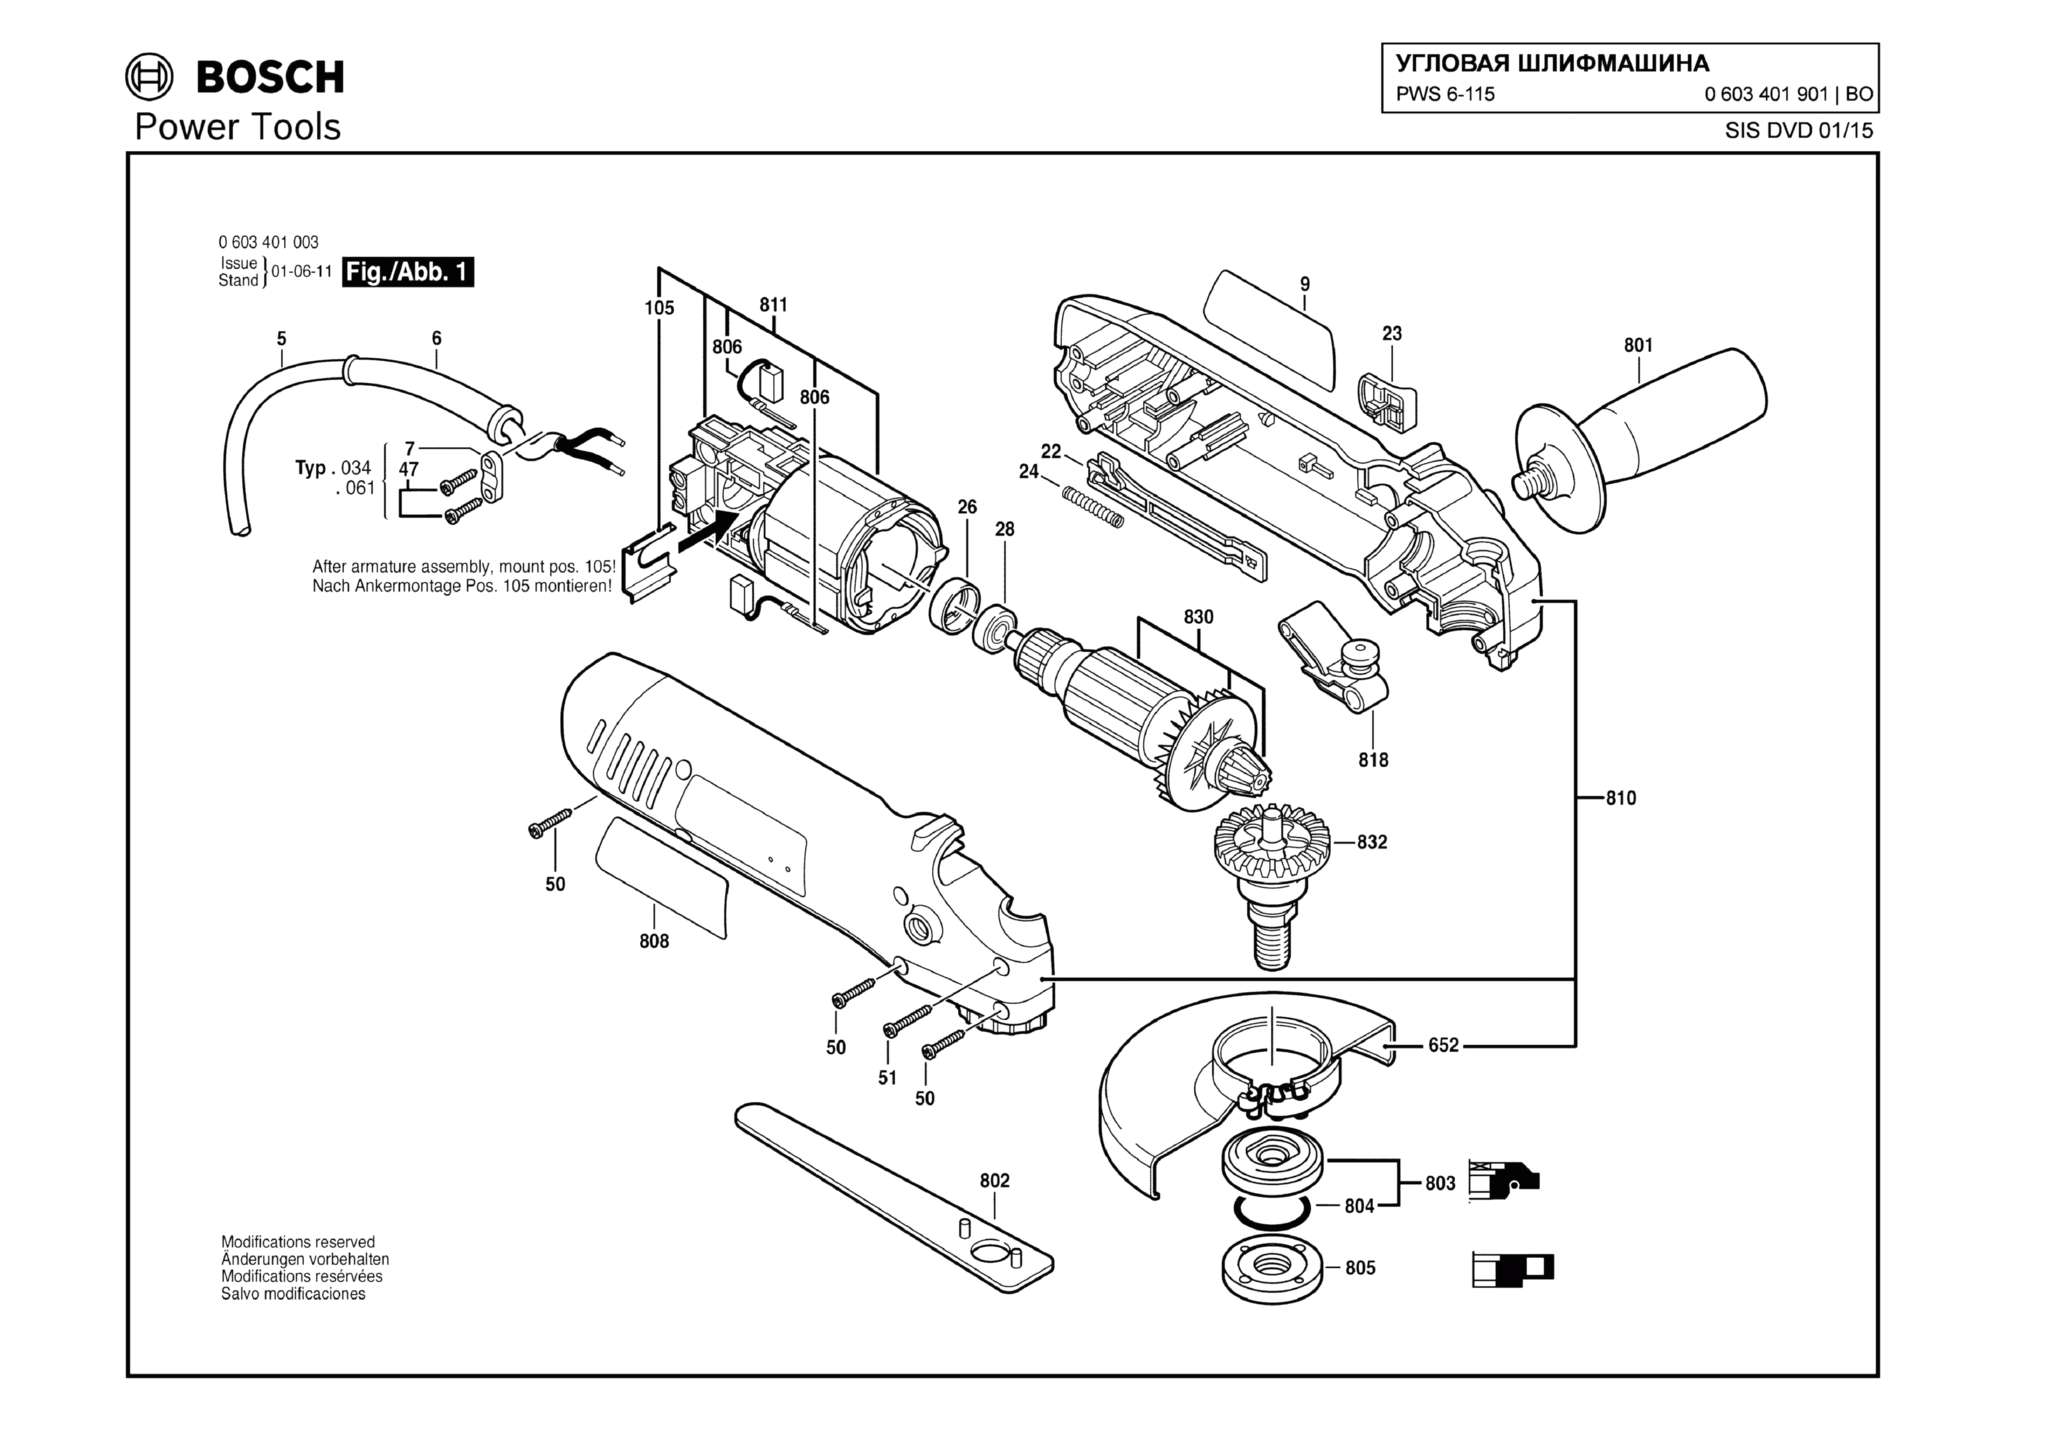 Запчасти, схема и деталировка Bosch PWS 6-115 (ТИП 0603401901)